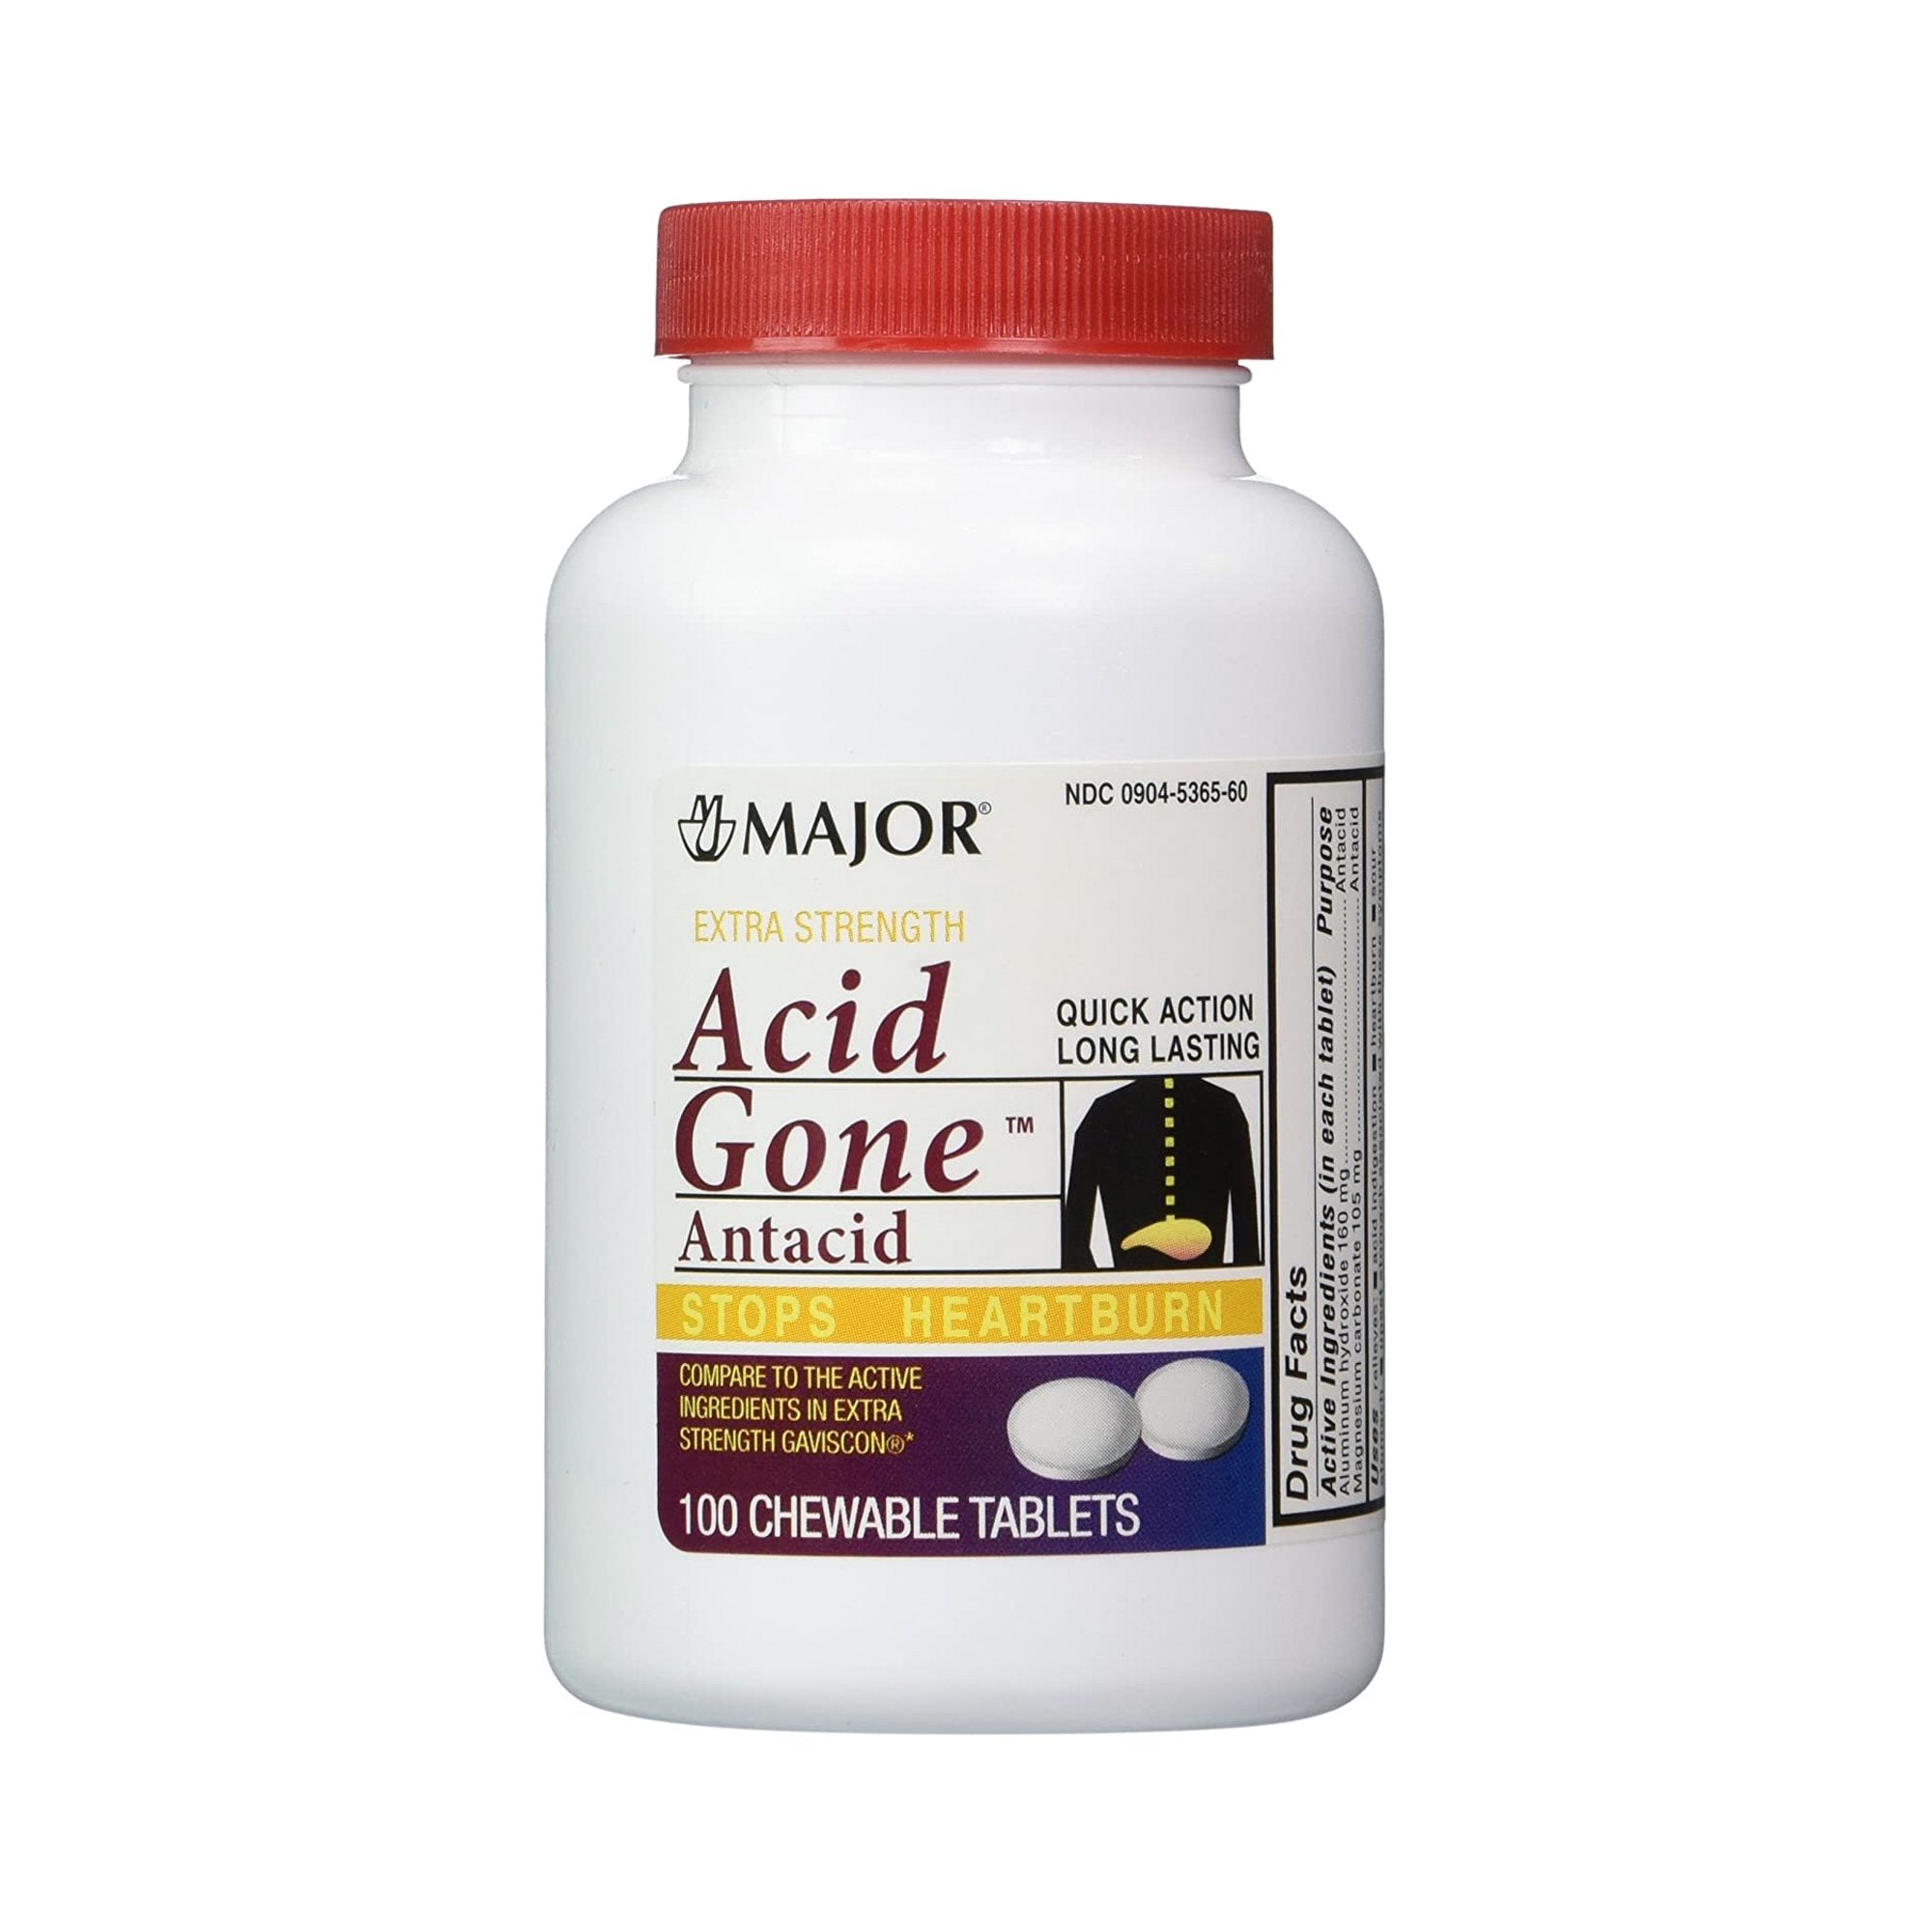 Antacid Acid Gone 160 mg - 105 mg Strength Chewable Tablet 100 per Bottle